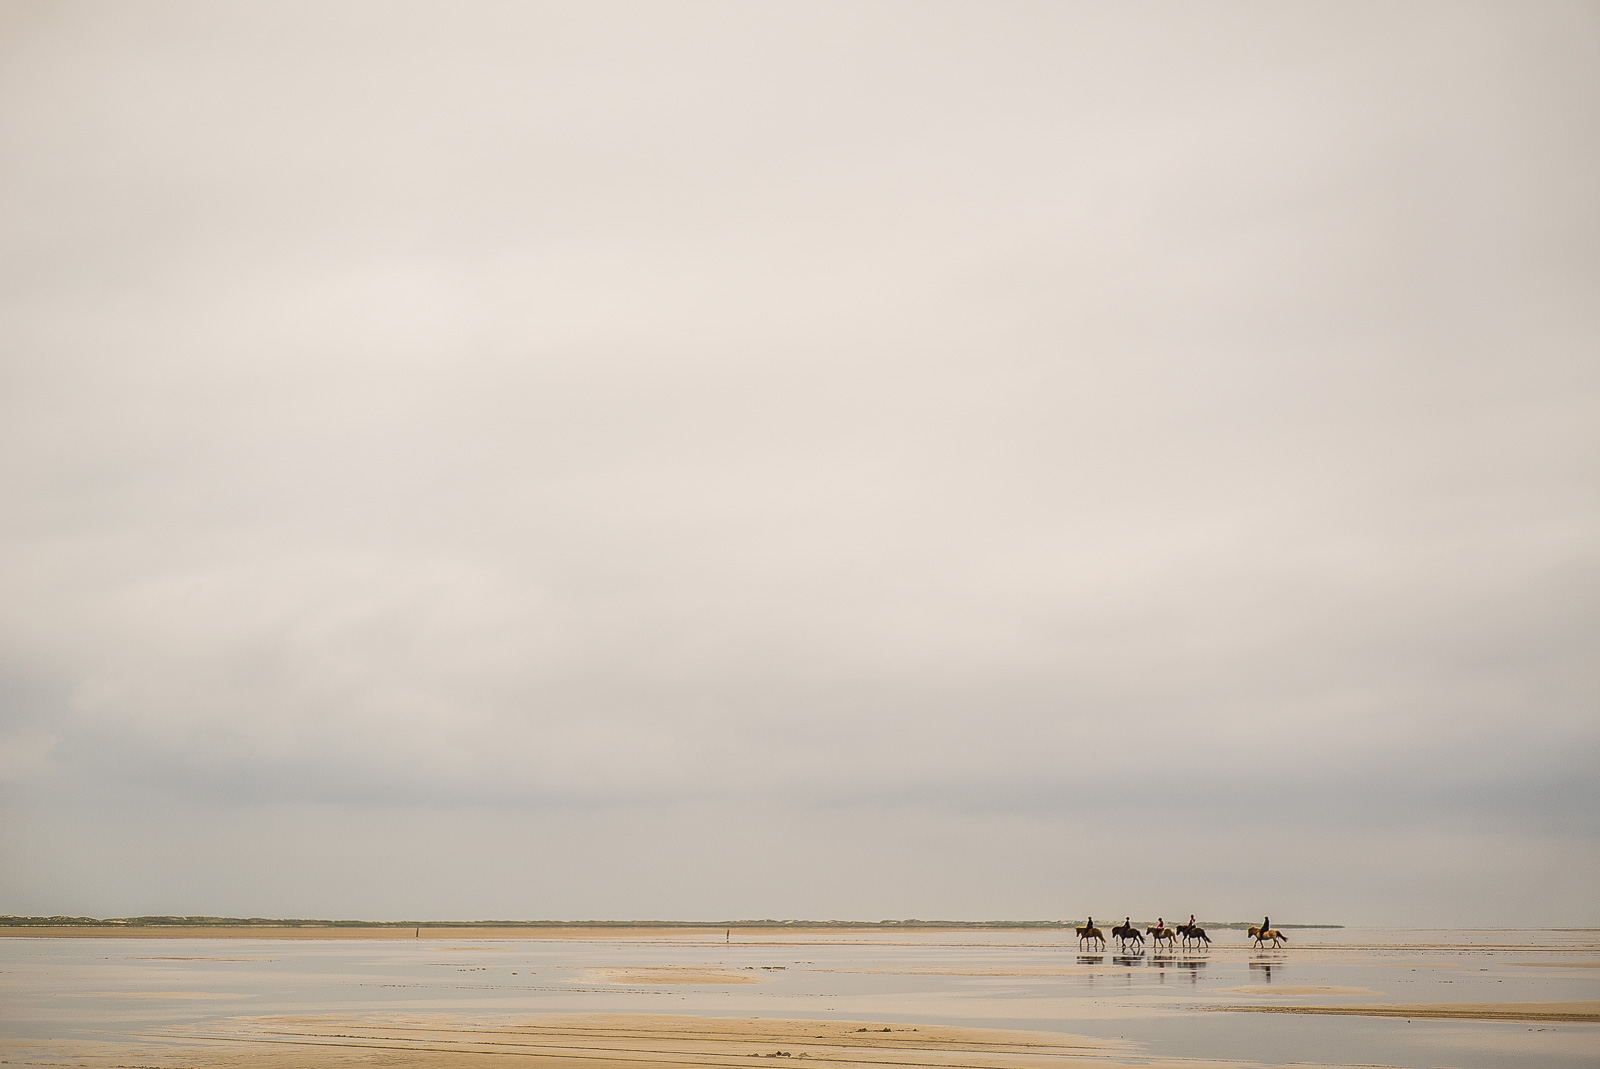 Fünf Reiter auf Pferden im Watt, klein in der rechten unteren Bildecke, darüber viel grauer Himmel